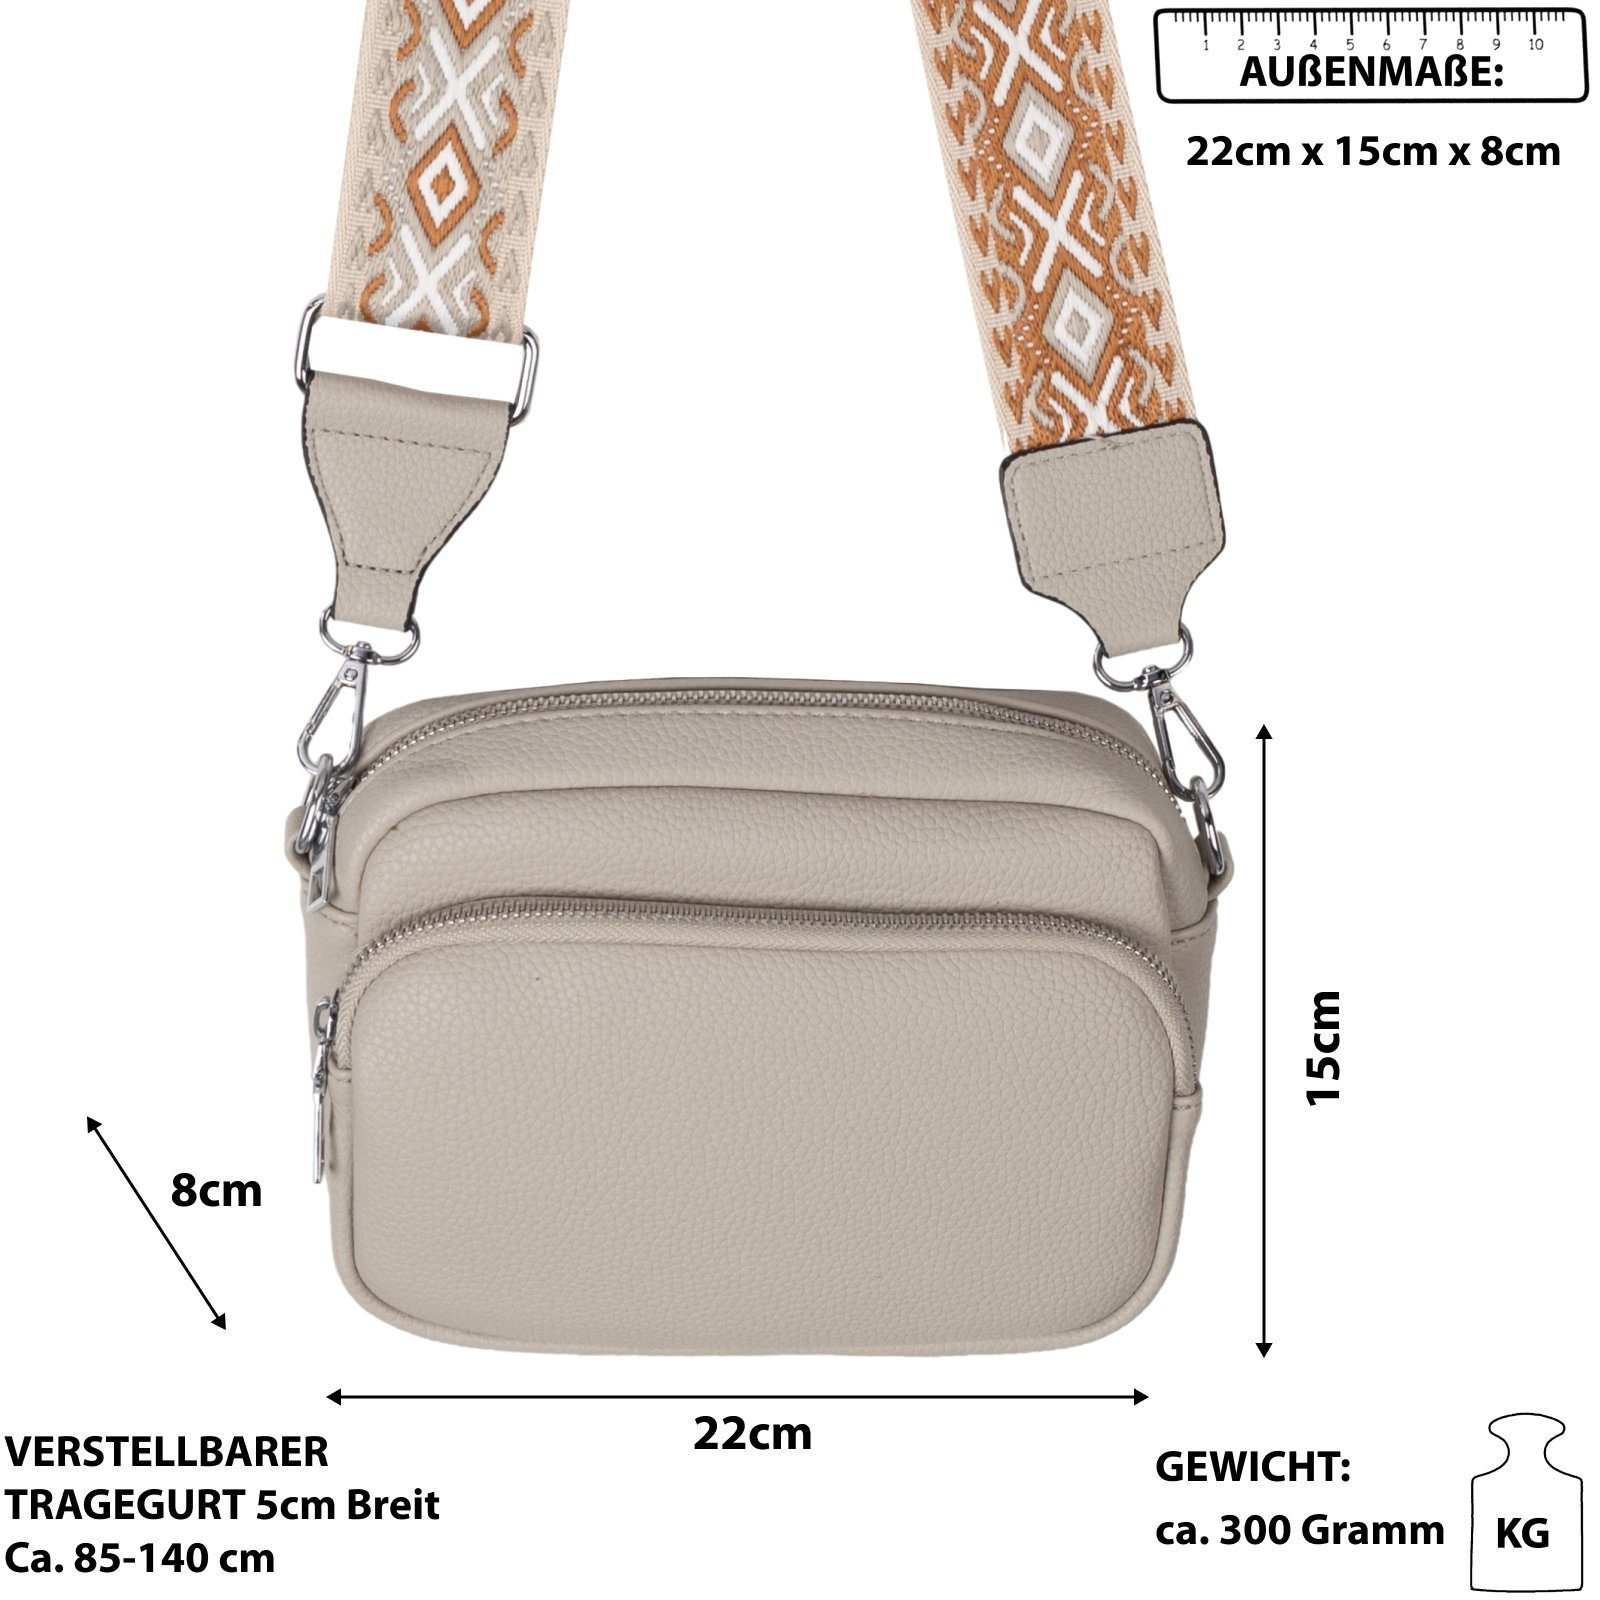 EAAKIE Gürteltasche Bauchtasche Umhängetasche Crossbody-Bag Schultertasche, tragbar als Italy-D, Umhängetasche CrossOver, Hüfttasche L.GREY Kunstleder